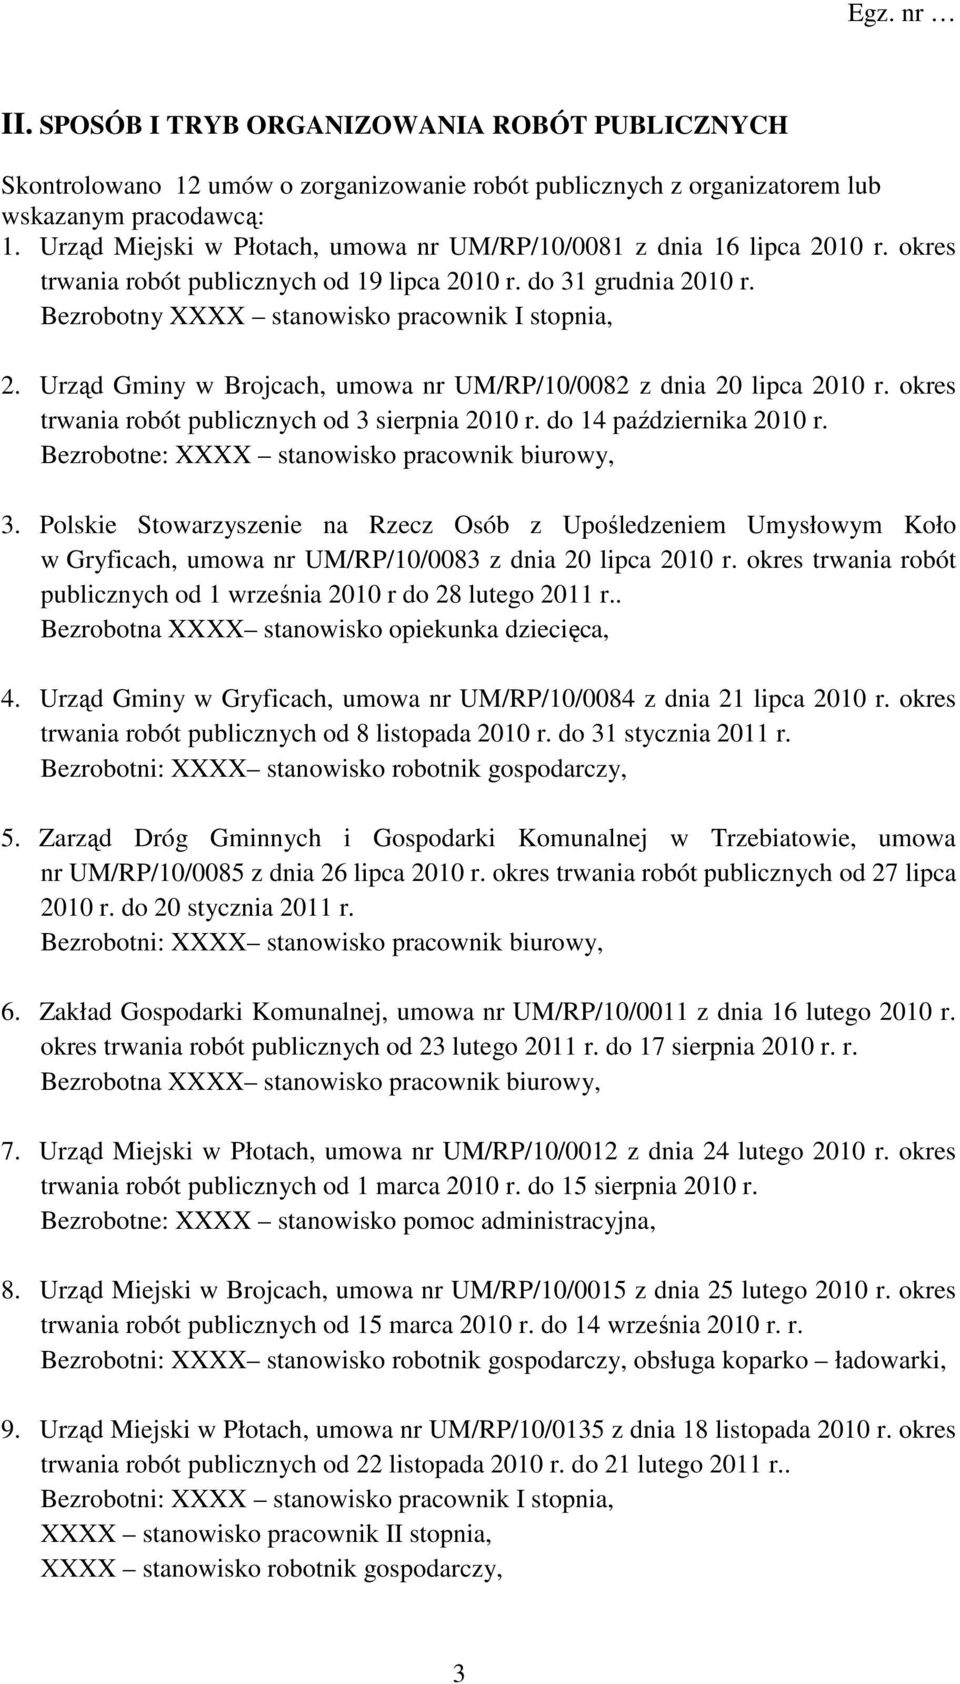 Urząd Gminy w Brojcach, umowa nr UM/RP/10/0082 z dnia 20 lipca 2010 r. okres trwania robót publicznych od 3 sierpnia 2010 r. do 14 października 2010 r.